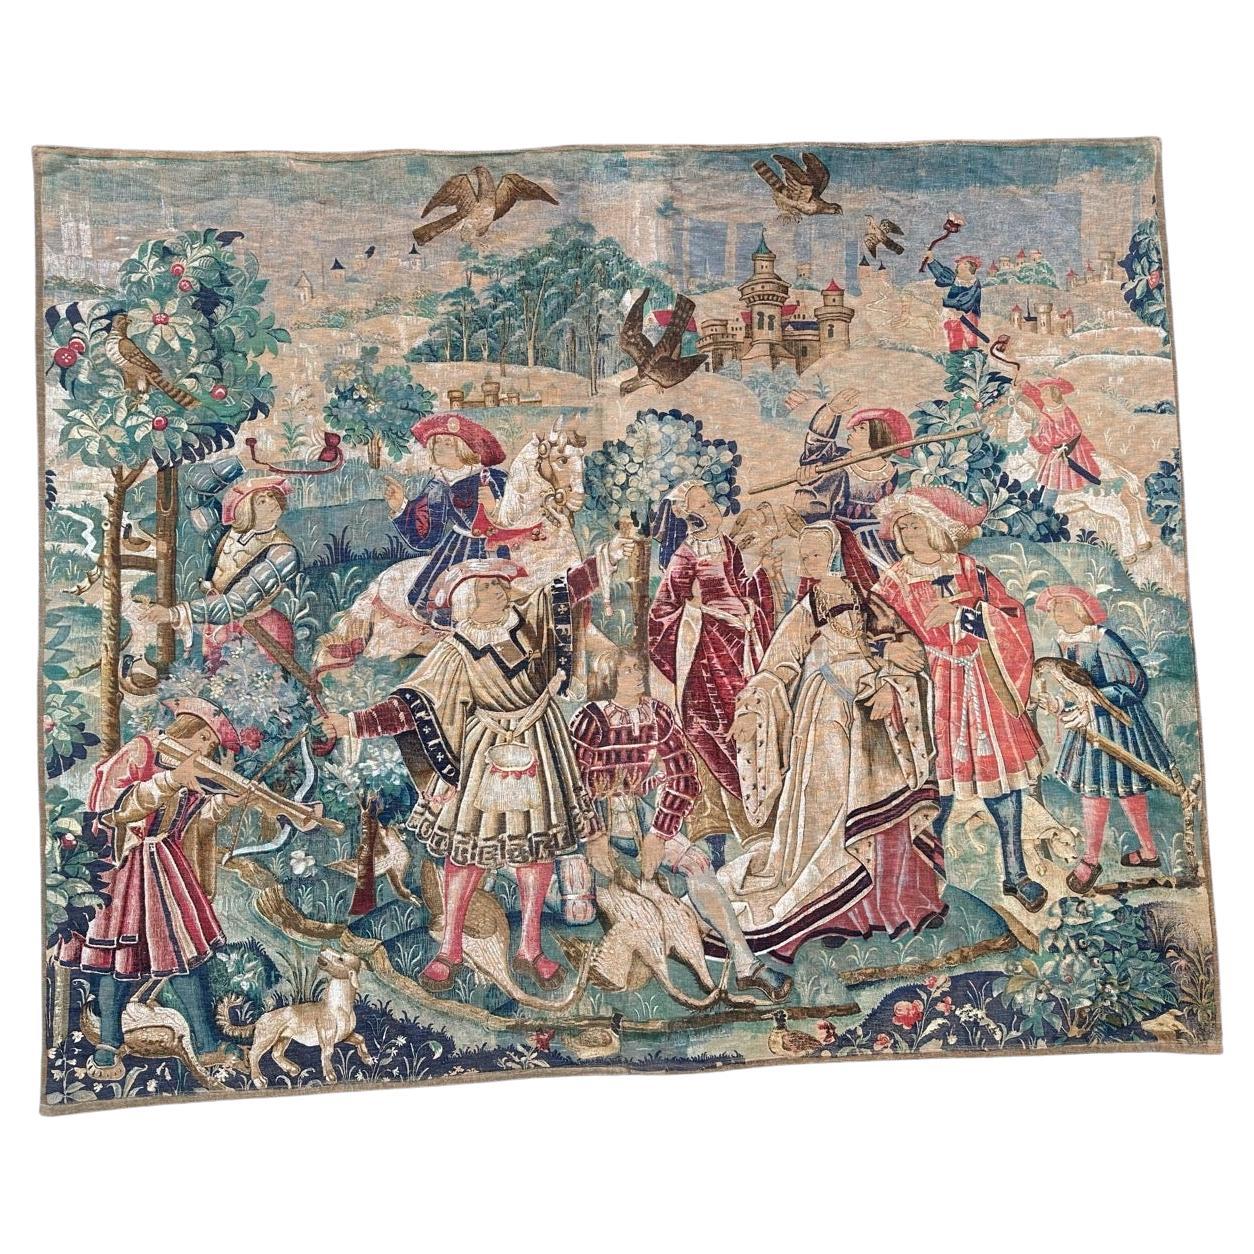 Bobyrug's Nice Vintage Medieval Aubusson Style Hand Printed Tapestry (Tapisserie médiévale imprimée à la main)